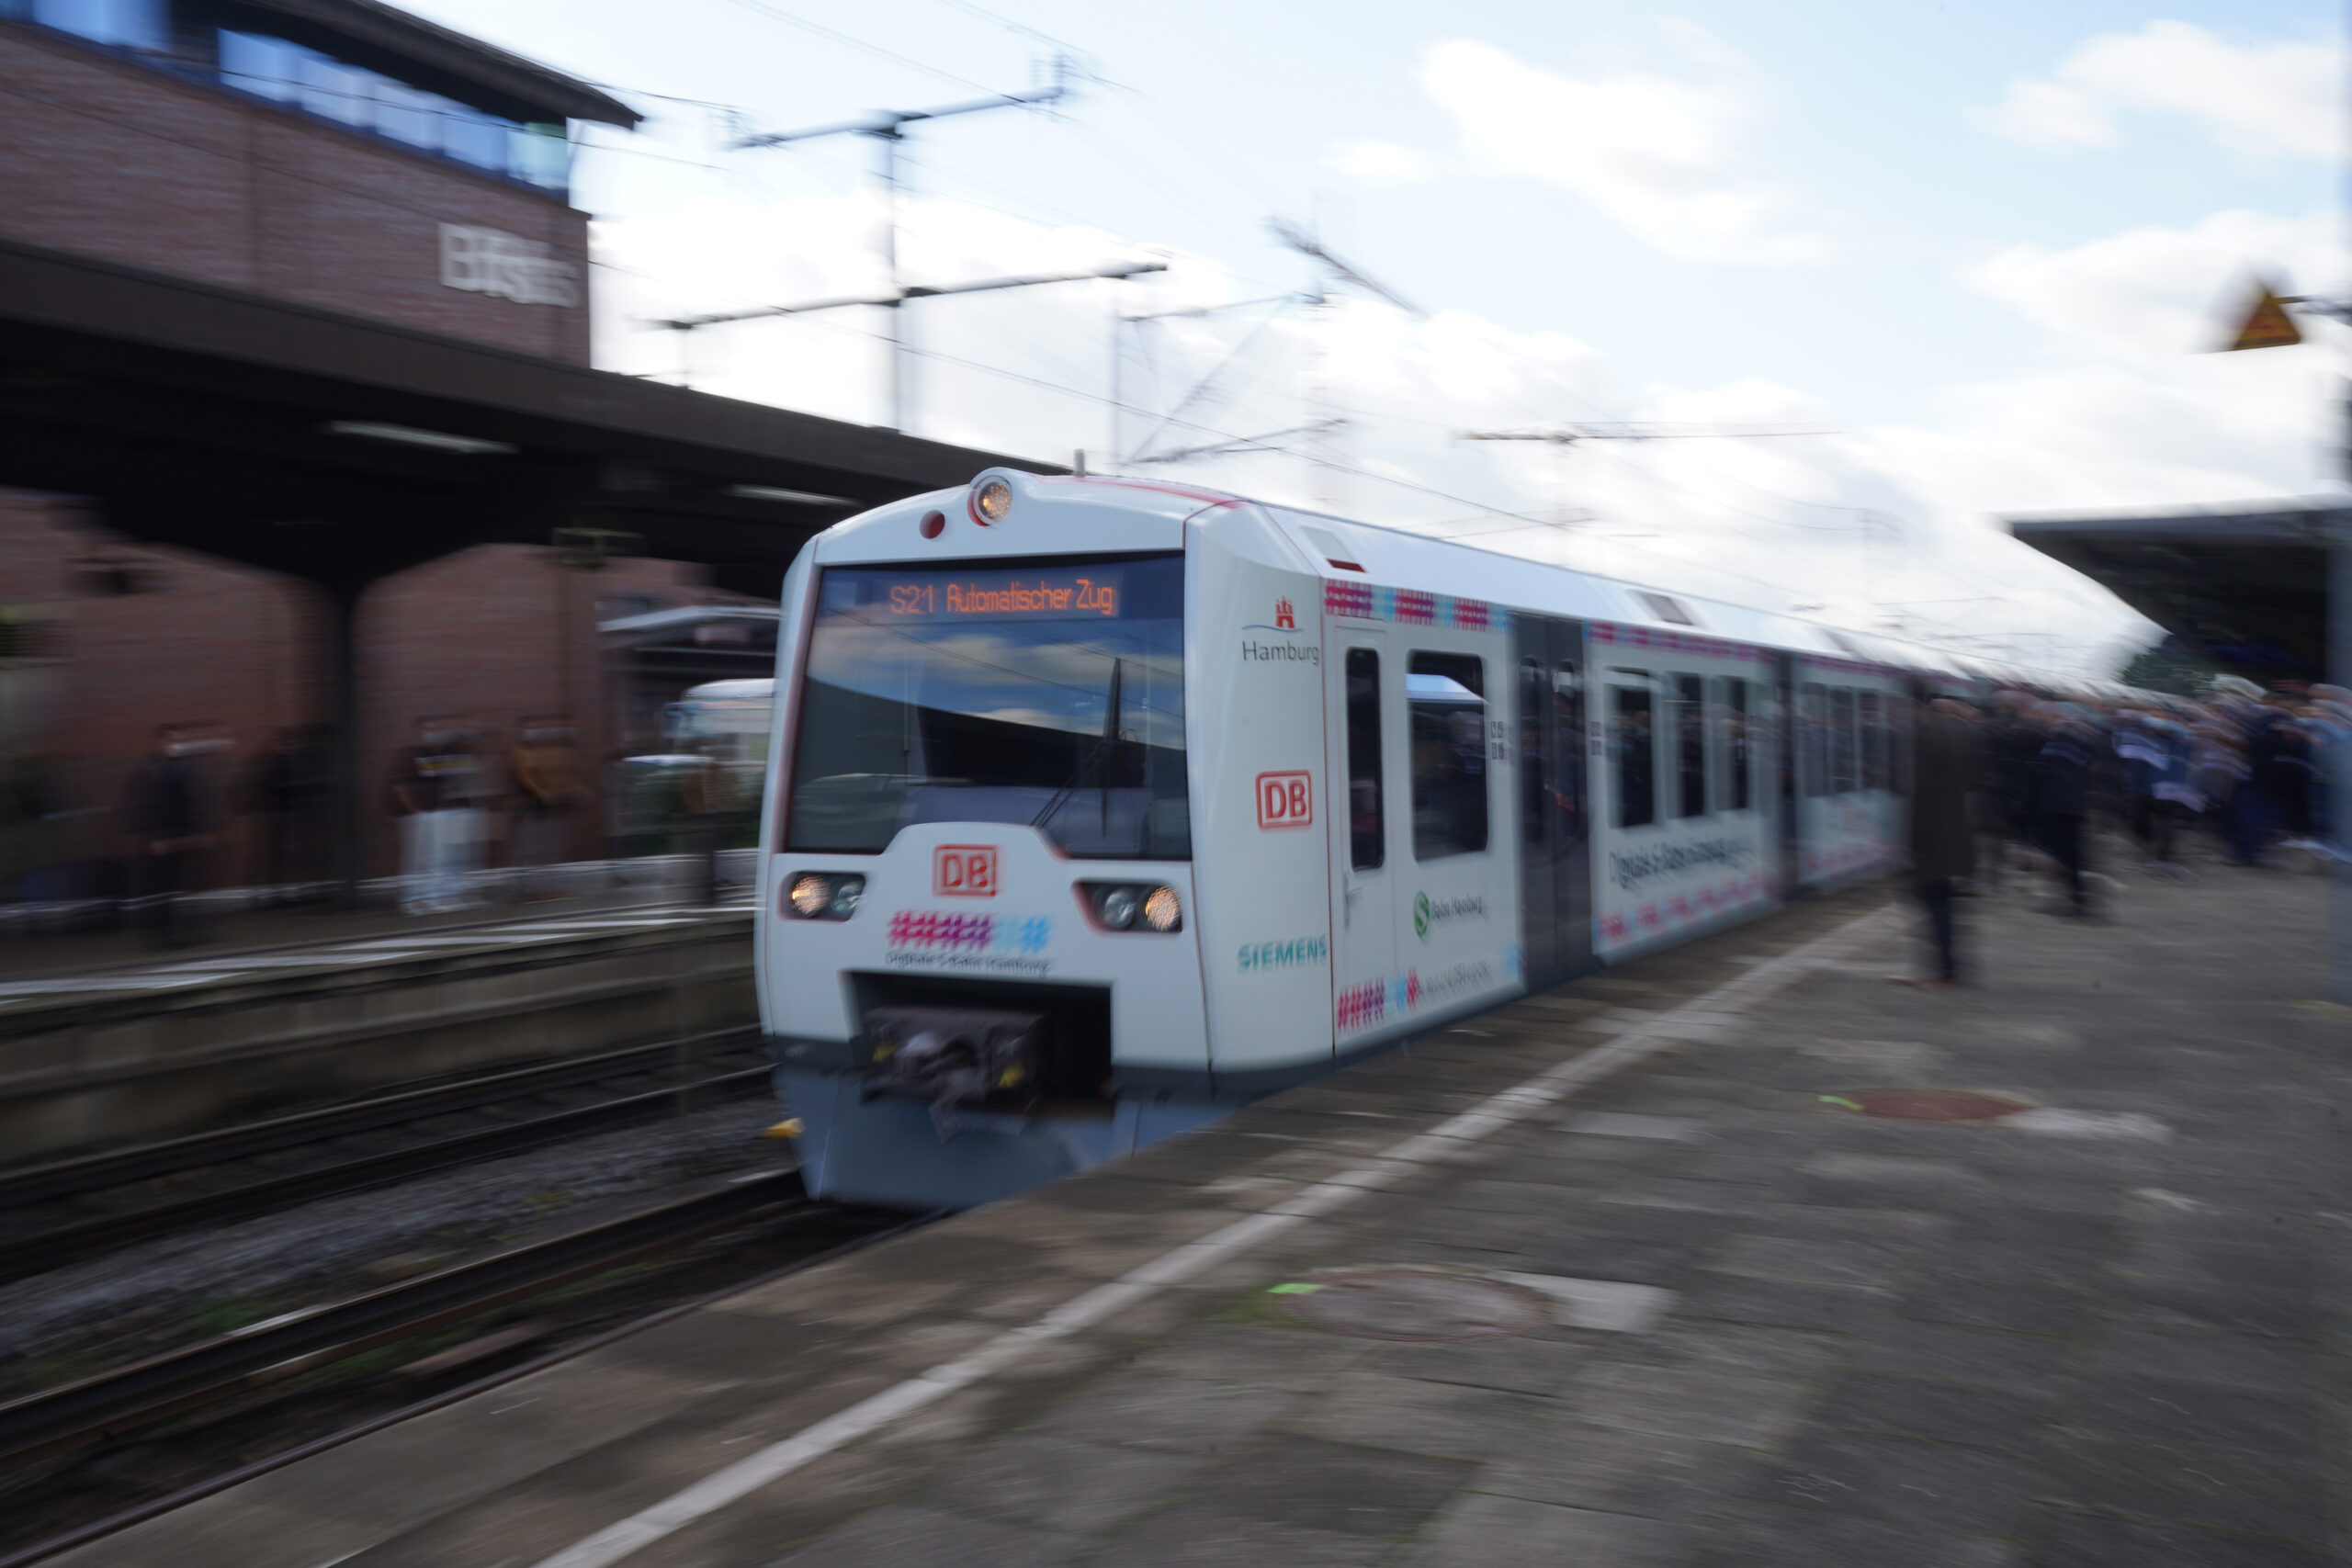 Die S-Bahn S21 verlässt den Bahnhof Bergedorf während der Premierenfahrt der digitalen, automatisch fahrenden S-Bahn Hamburg.